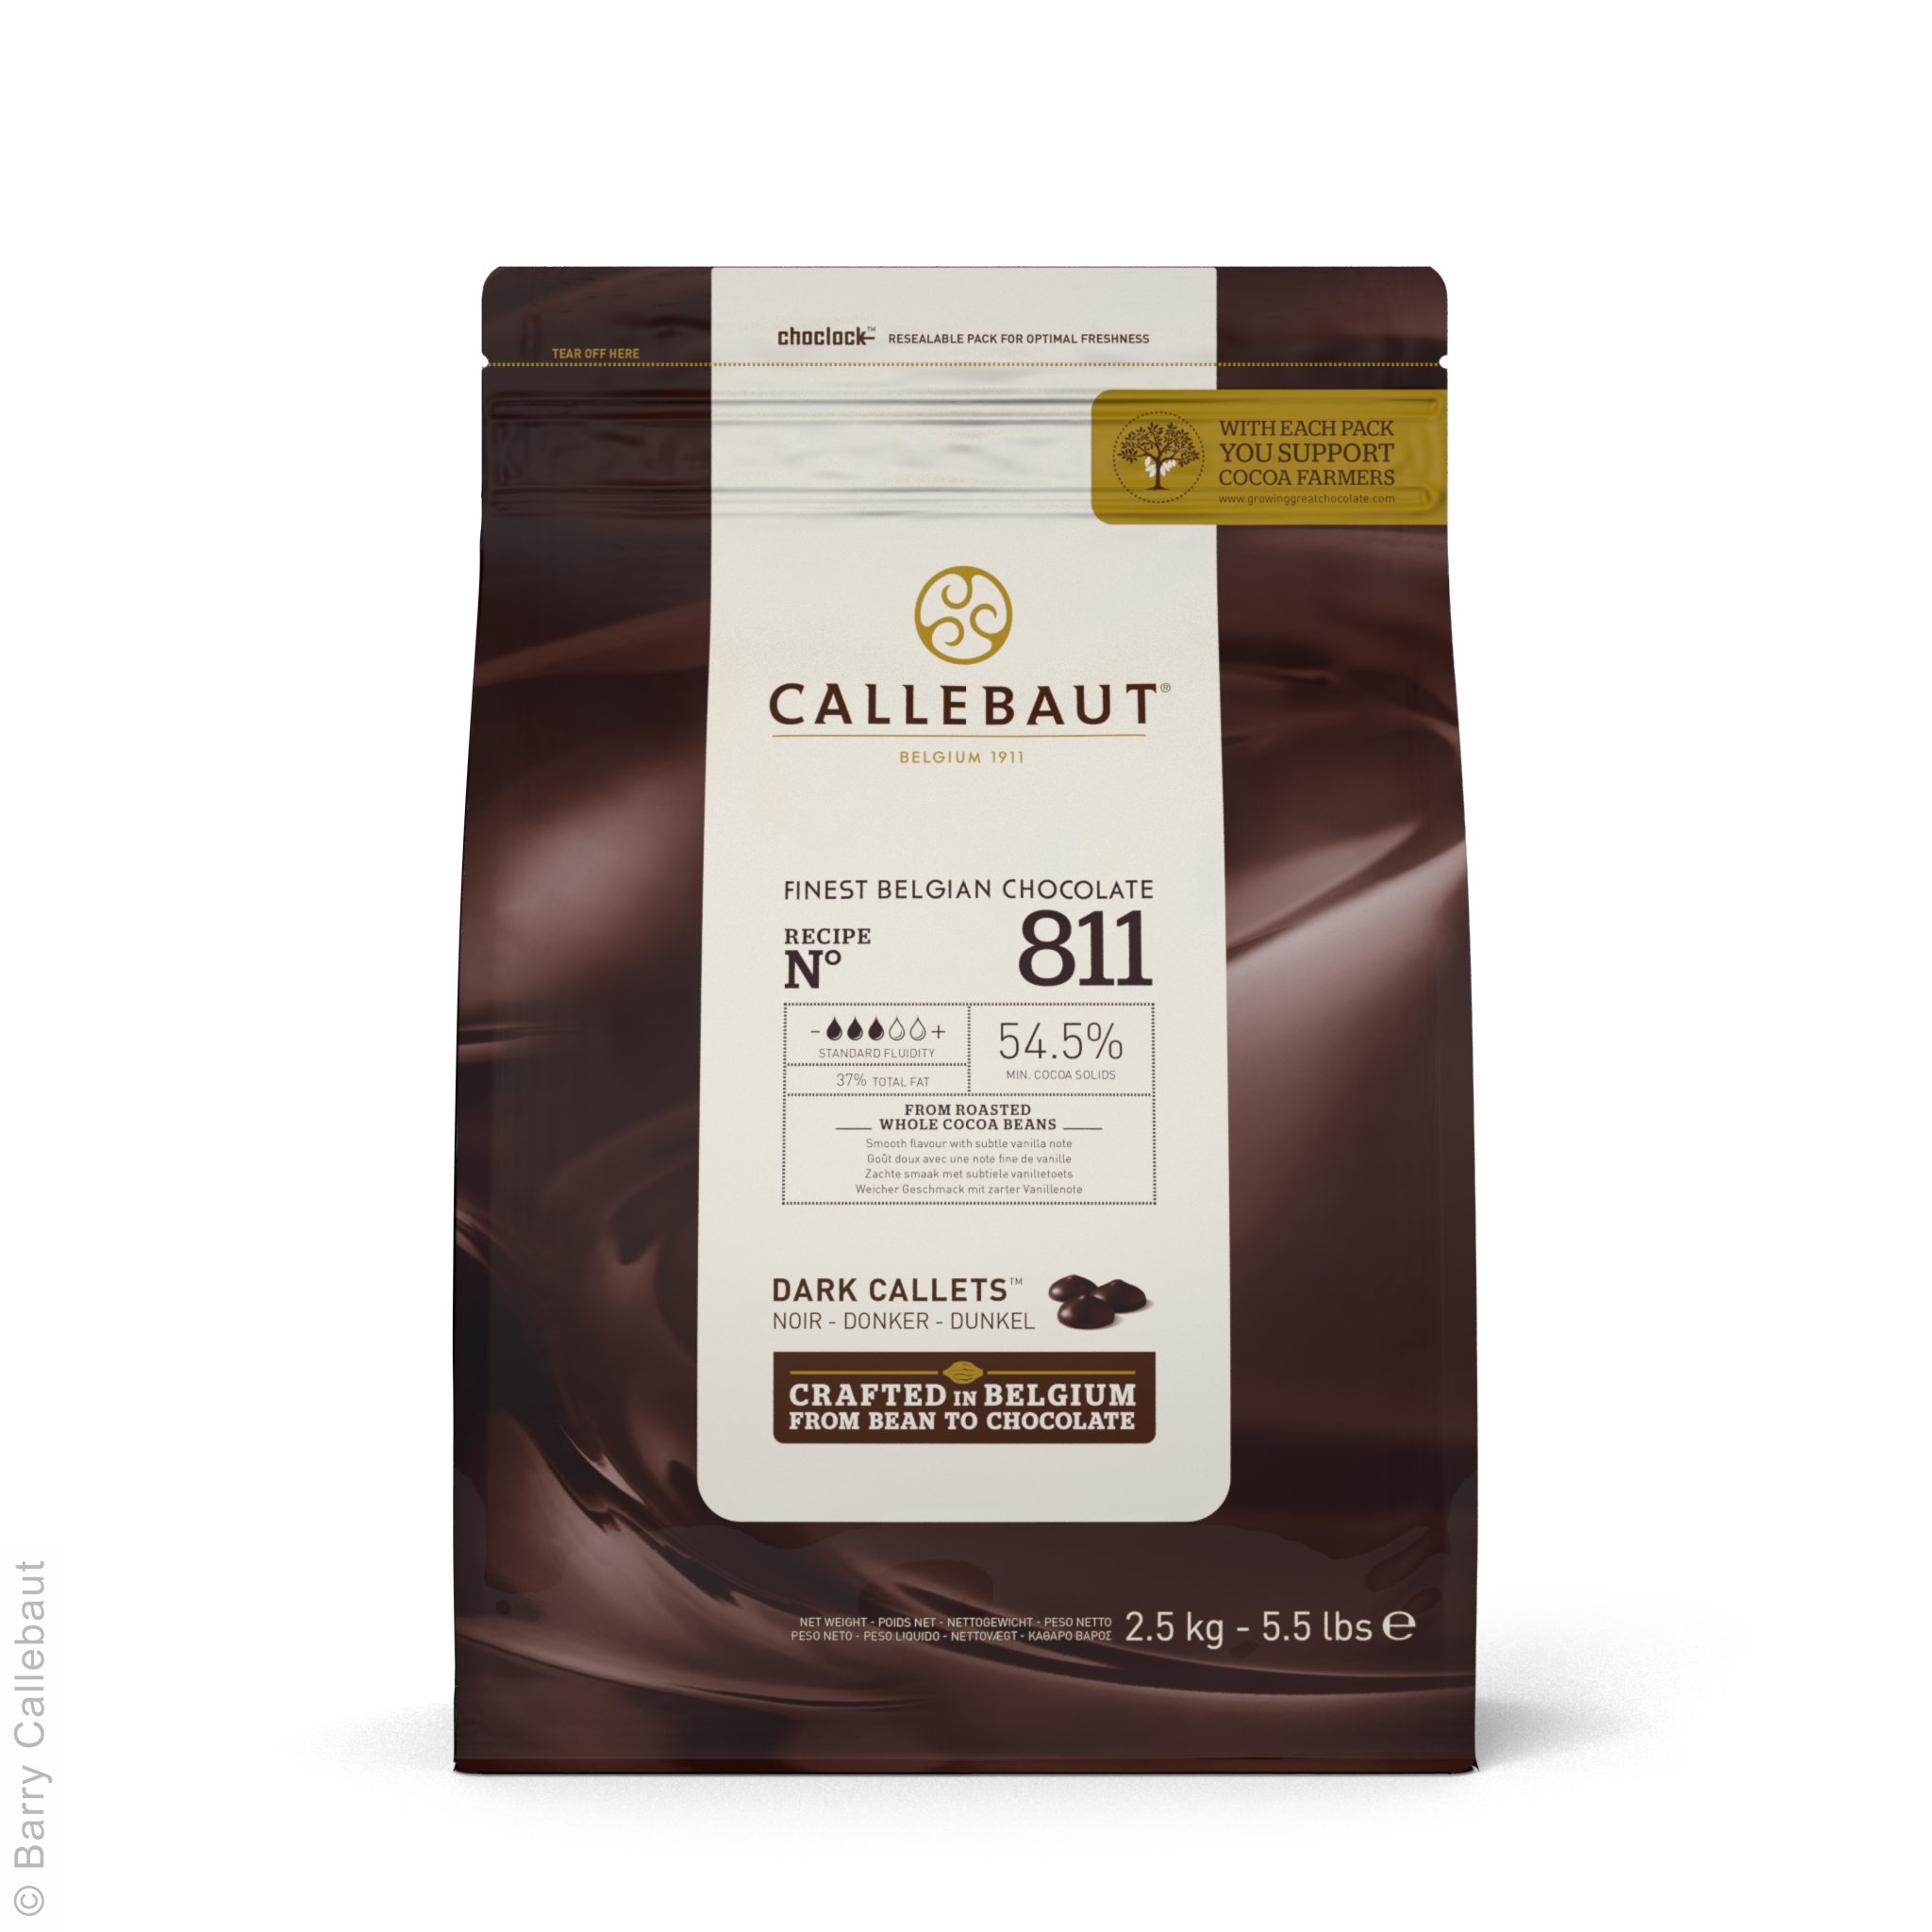 От 2077,5 ₽ за 2,5 кг пакет Callebaut 811